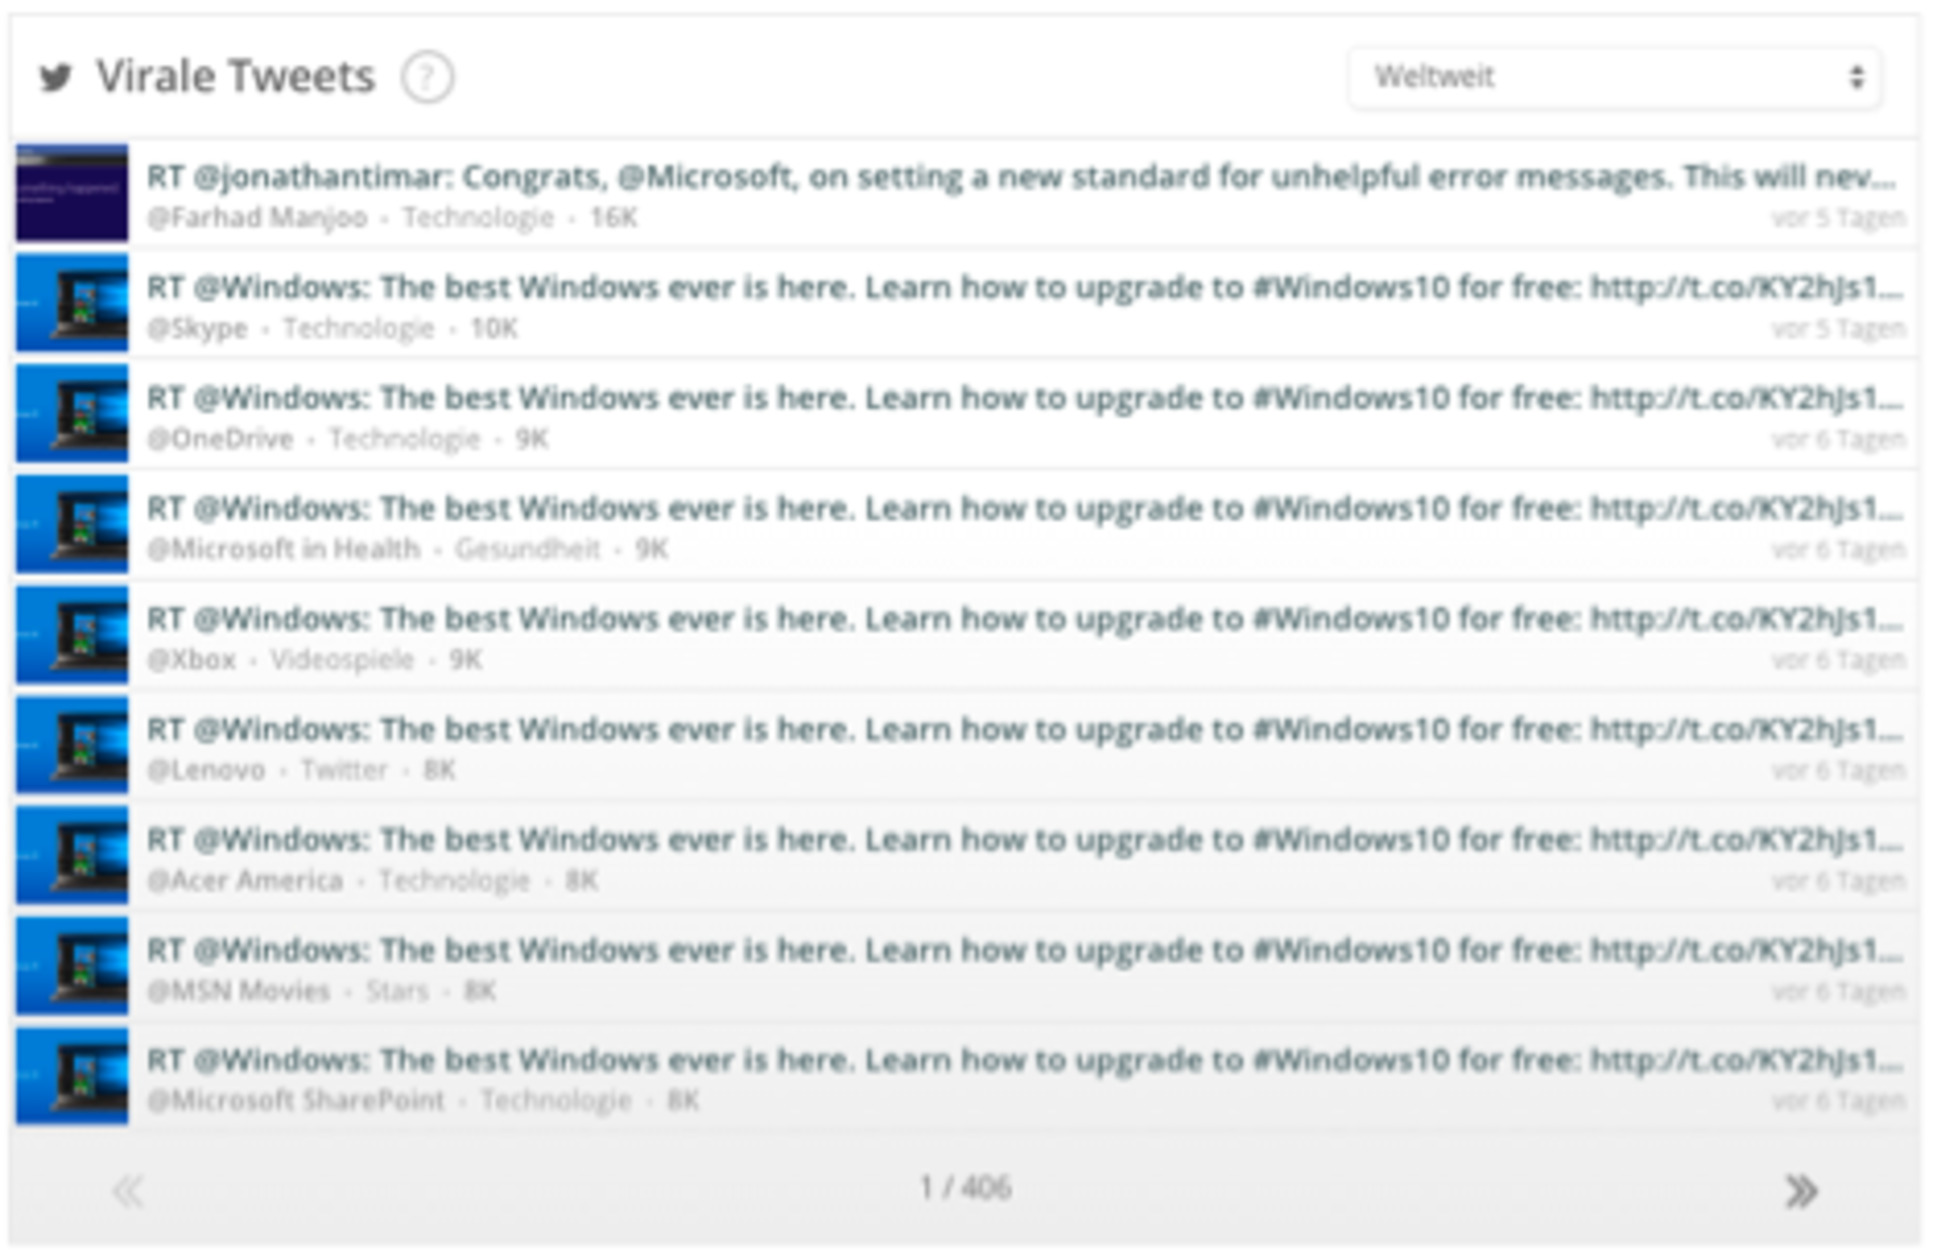 Windows_virale tweets_1